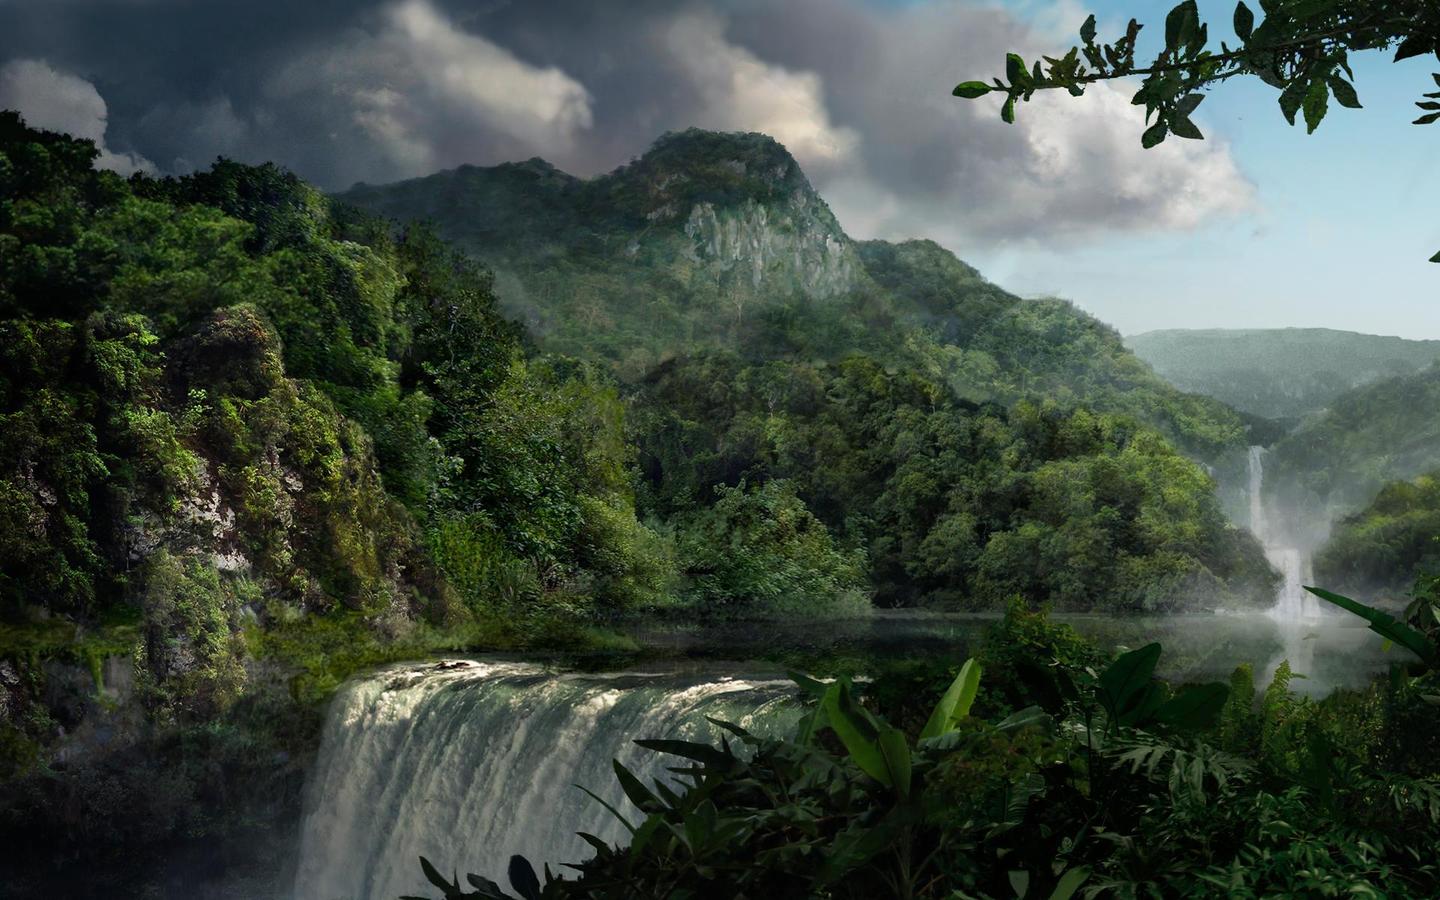 HD achtergrond met mooi landschap met een rivier met twee watervallen